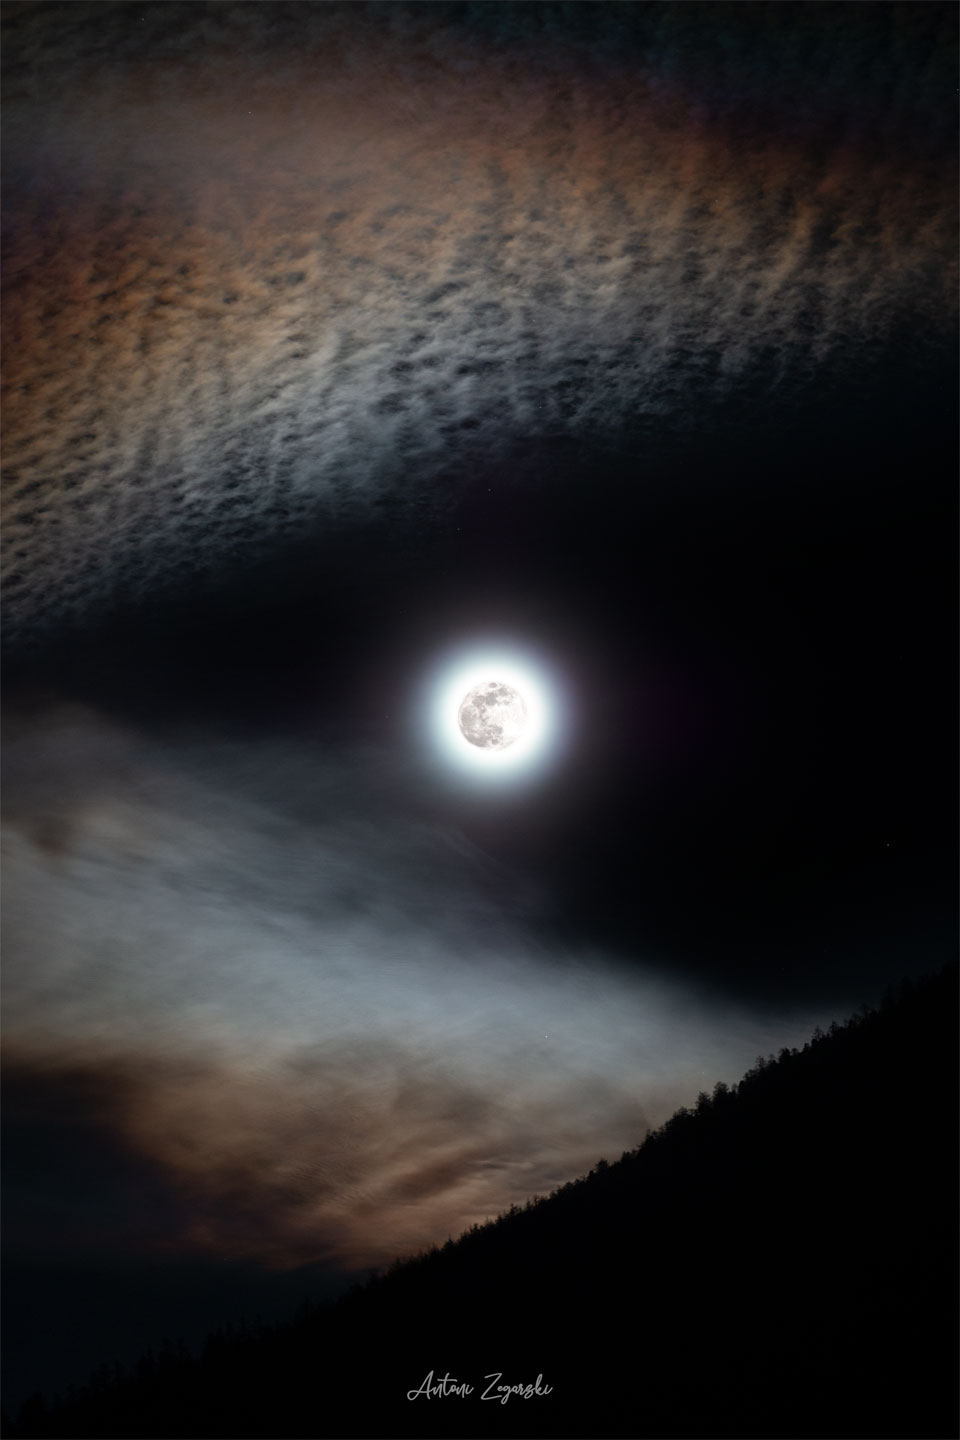 Mitten im Bild leuchtet der Mond, umgeben von einem hellen Lichterkranz. Oben sind regenbogenfarbige Zirren, unten ein dunkler bewaldeter Berghang.